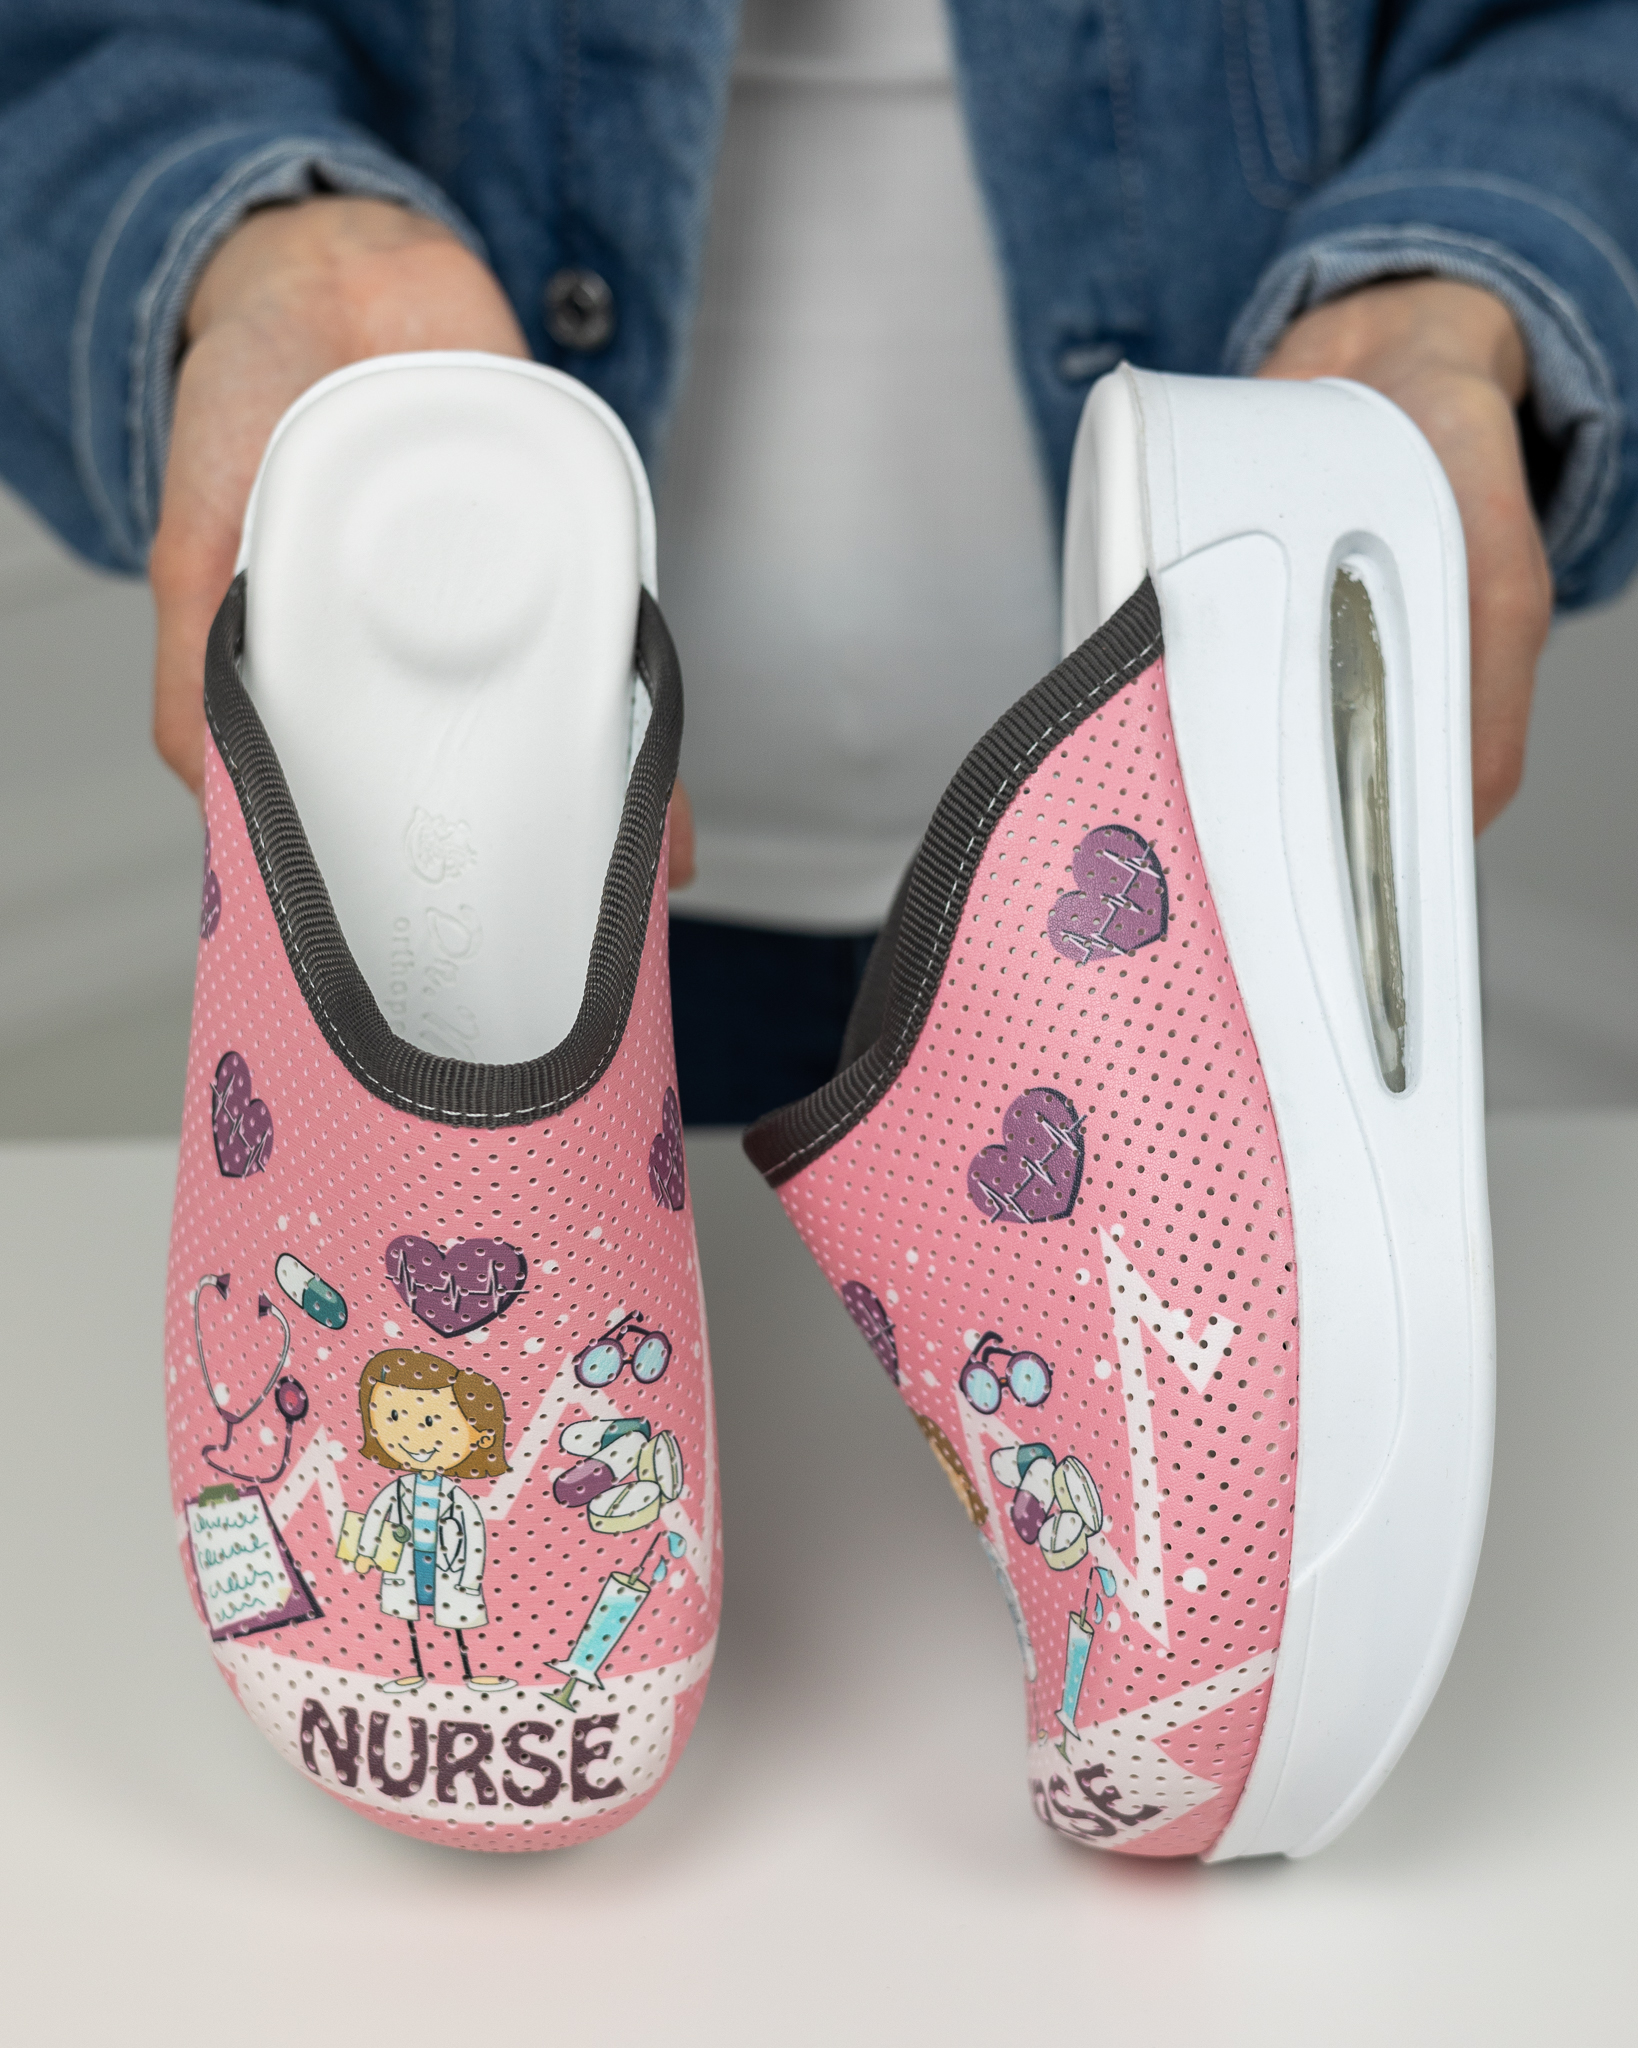 Miss Nurse